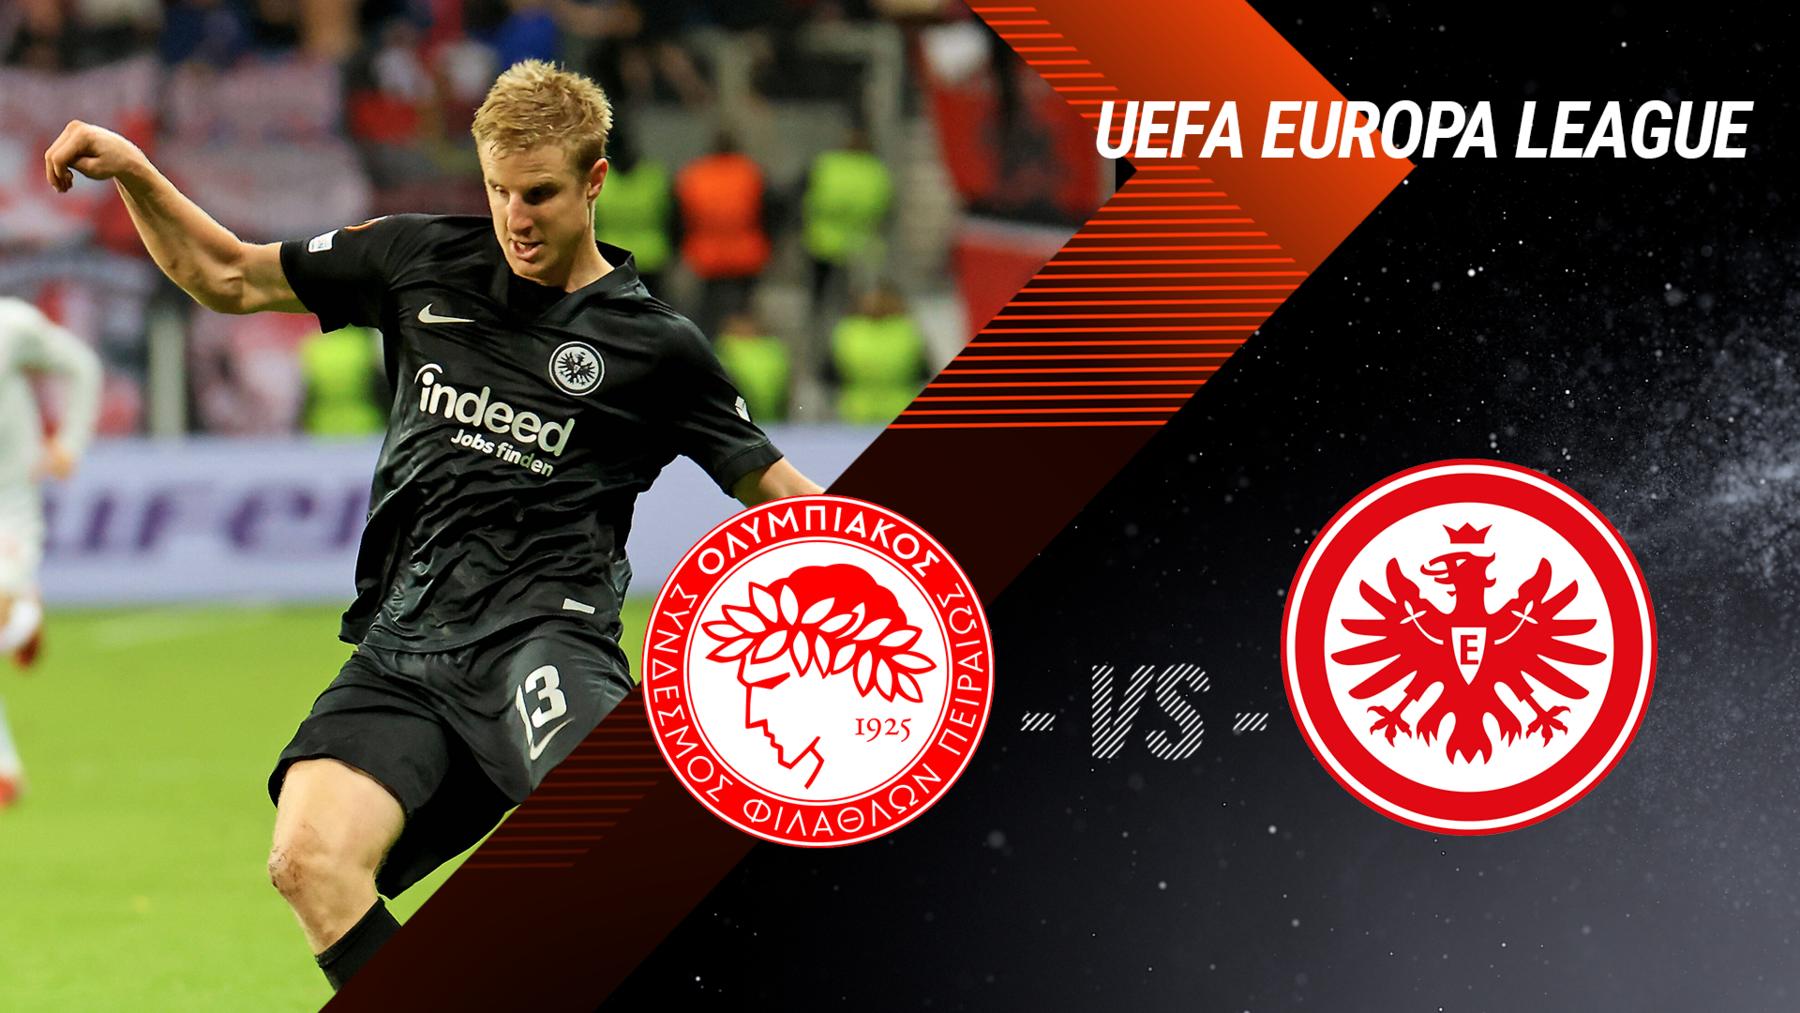 Matchday 4: Olympiakos Piräus vs. Eintracht Frankfurt